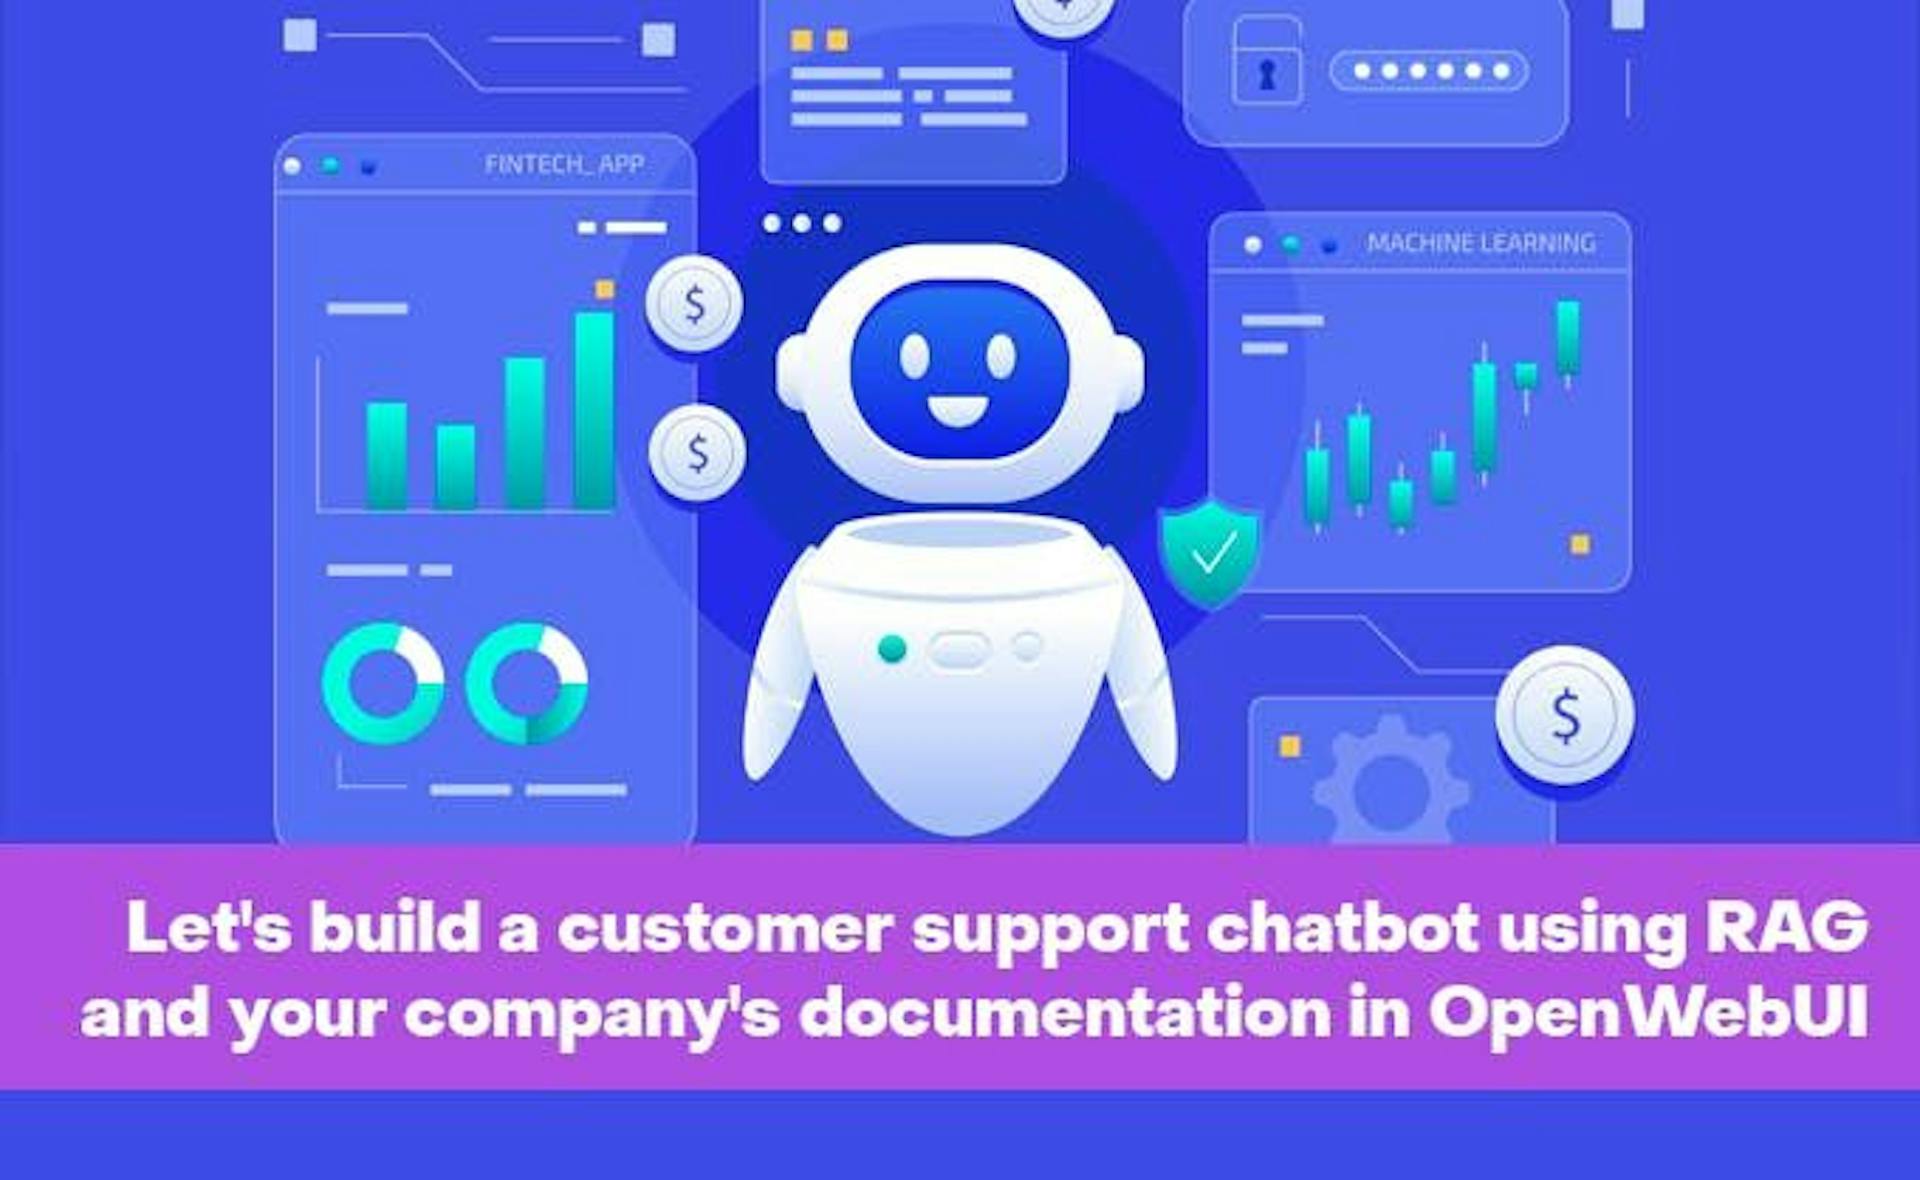 featured image - RAG'ı ve şirketinizin OpenWebUI'daki belgelerini kullanarak bir müşteri destek sohbet robotu oluşturalım